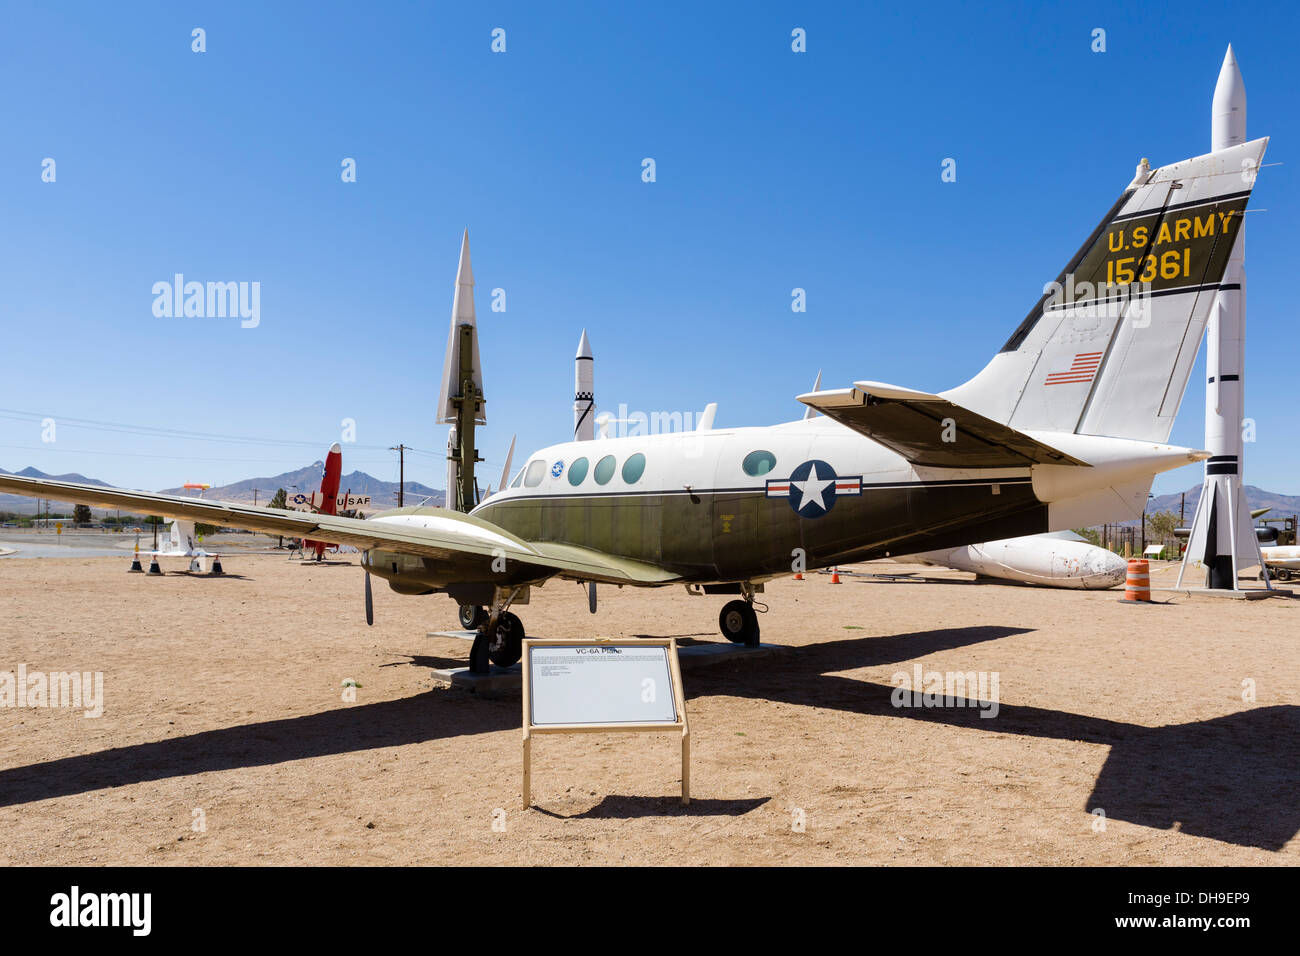 El VC-6A los aviones utilizados por el Dr. Wernher von Braun, Parque de misiles de Lanzamiento de Misiles White Sand, cerca de Alamogordo, Nuevo México, EE.UU. Foto de stock